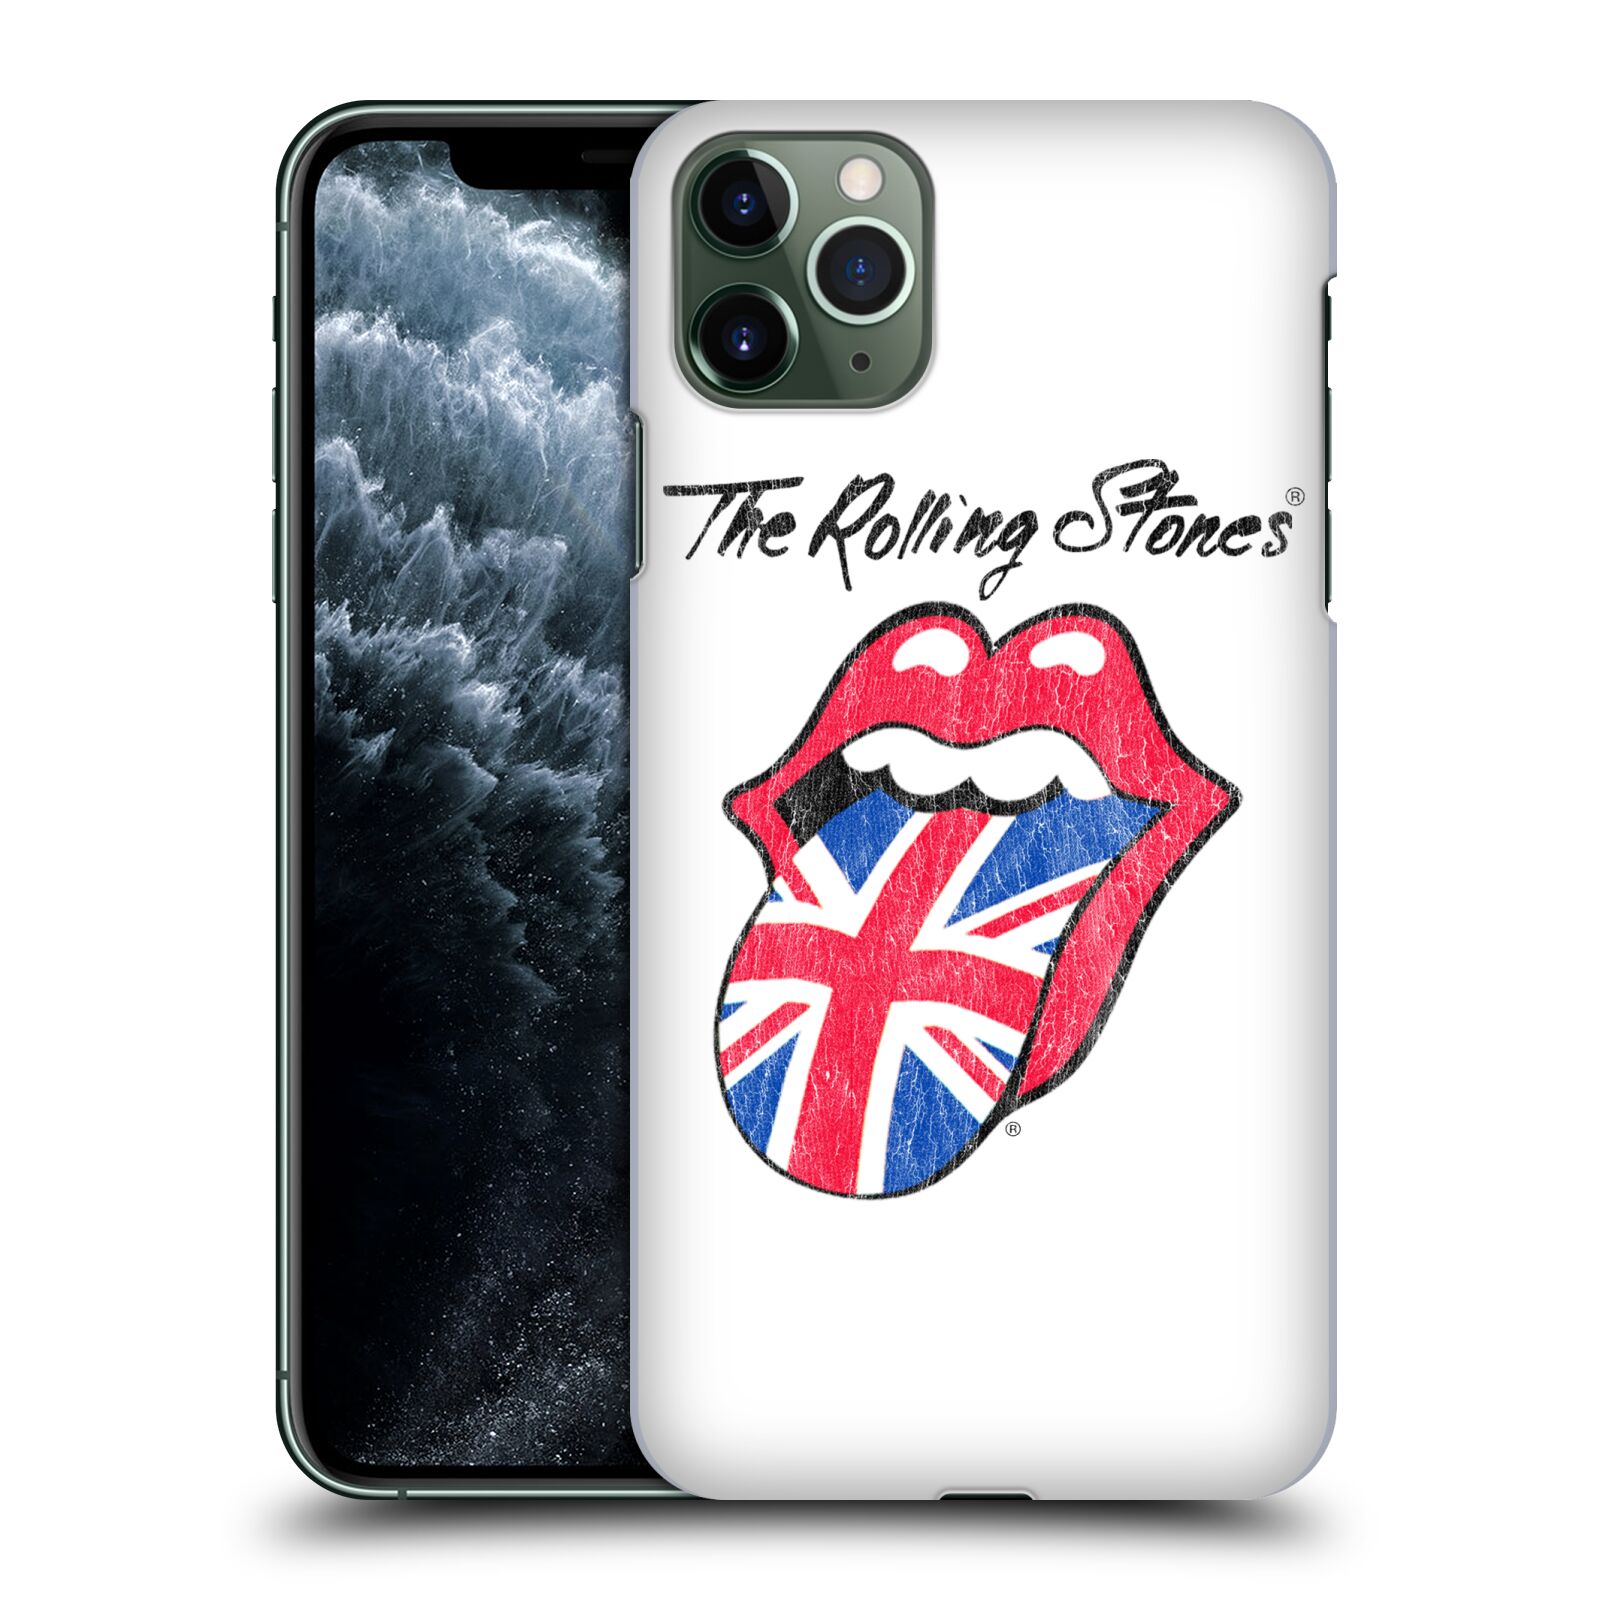 Pouzdro na mobil Apple Iphone 11 PRO MAX - HEAD CASE - rocková skupina Rolling Stones bílé pozadí